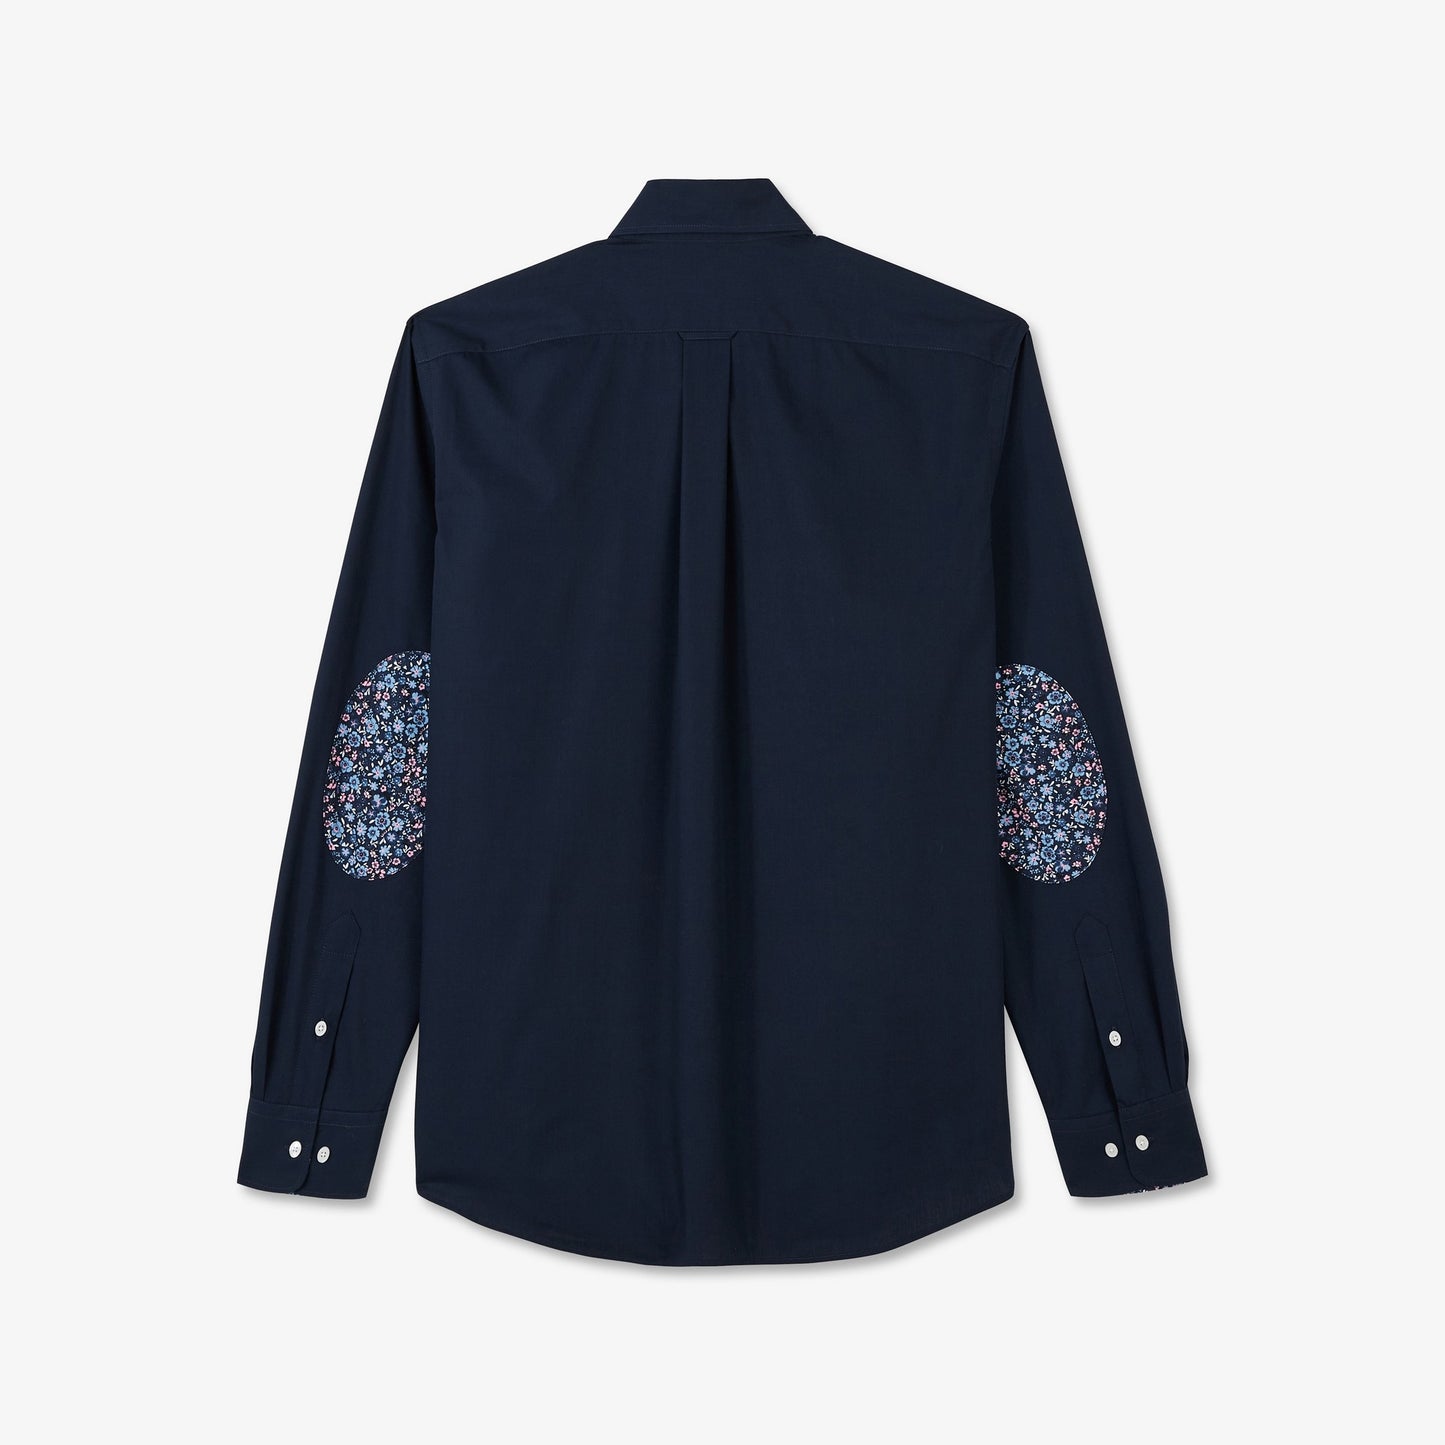 Chemise bleu marine avec détails fleuris